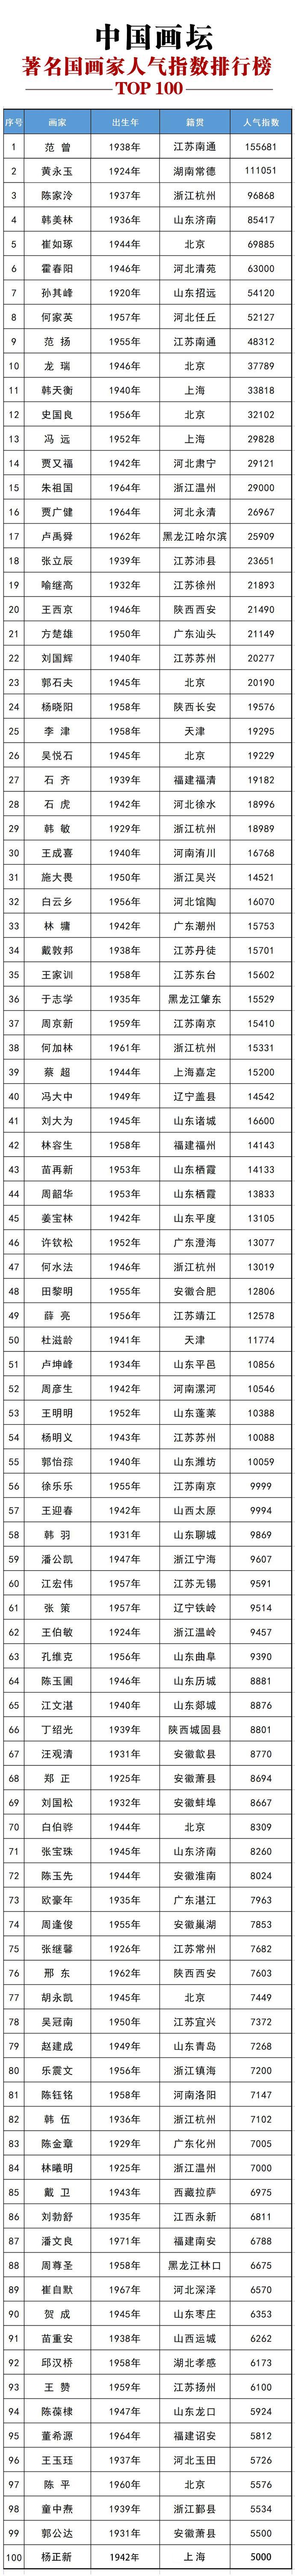 中国当代画坛、著名画家2022年1月份人气指数排行榜top100